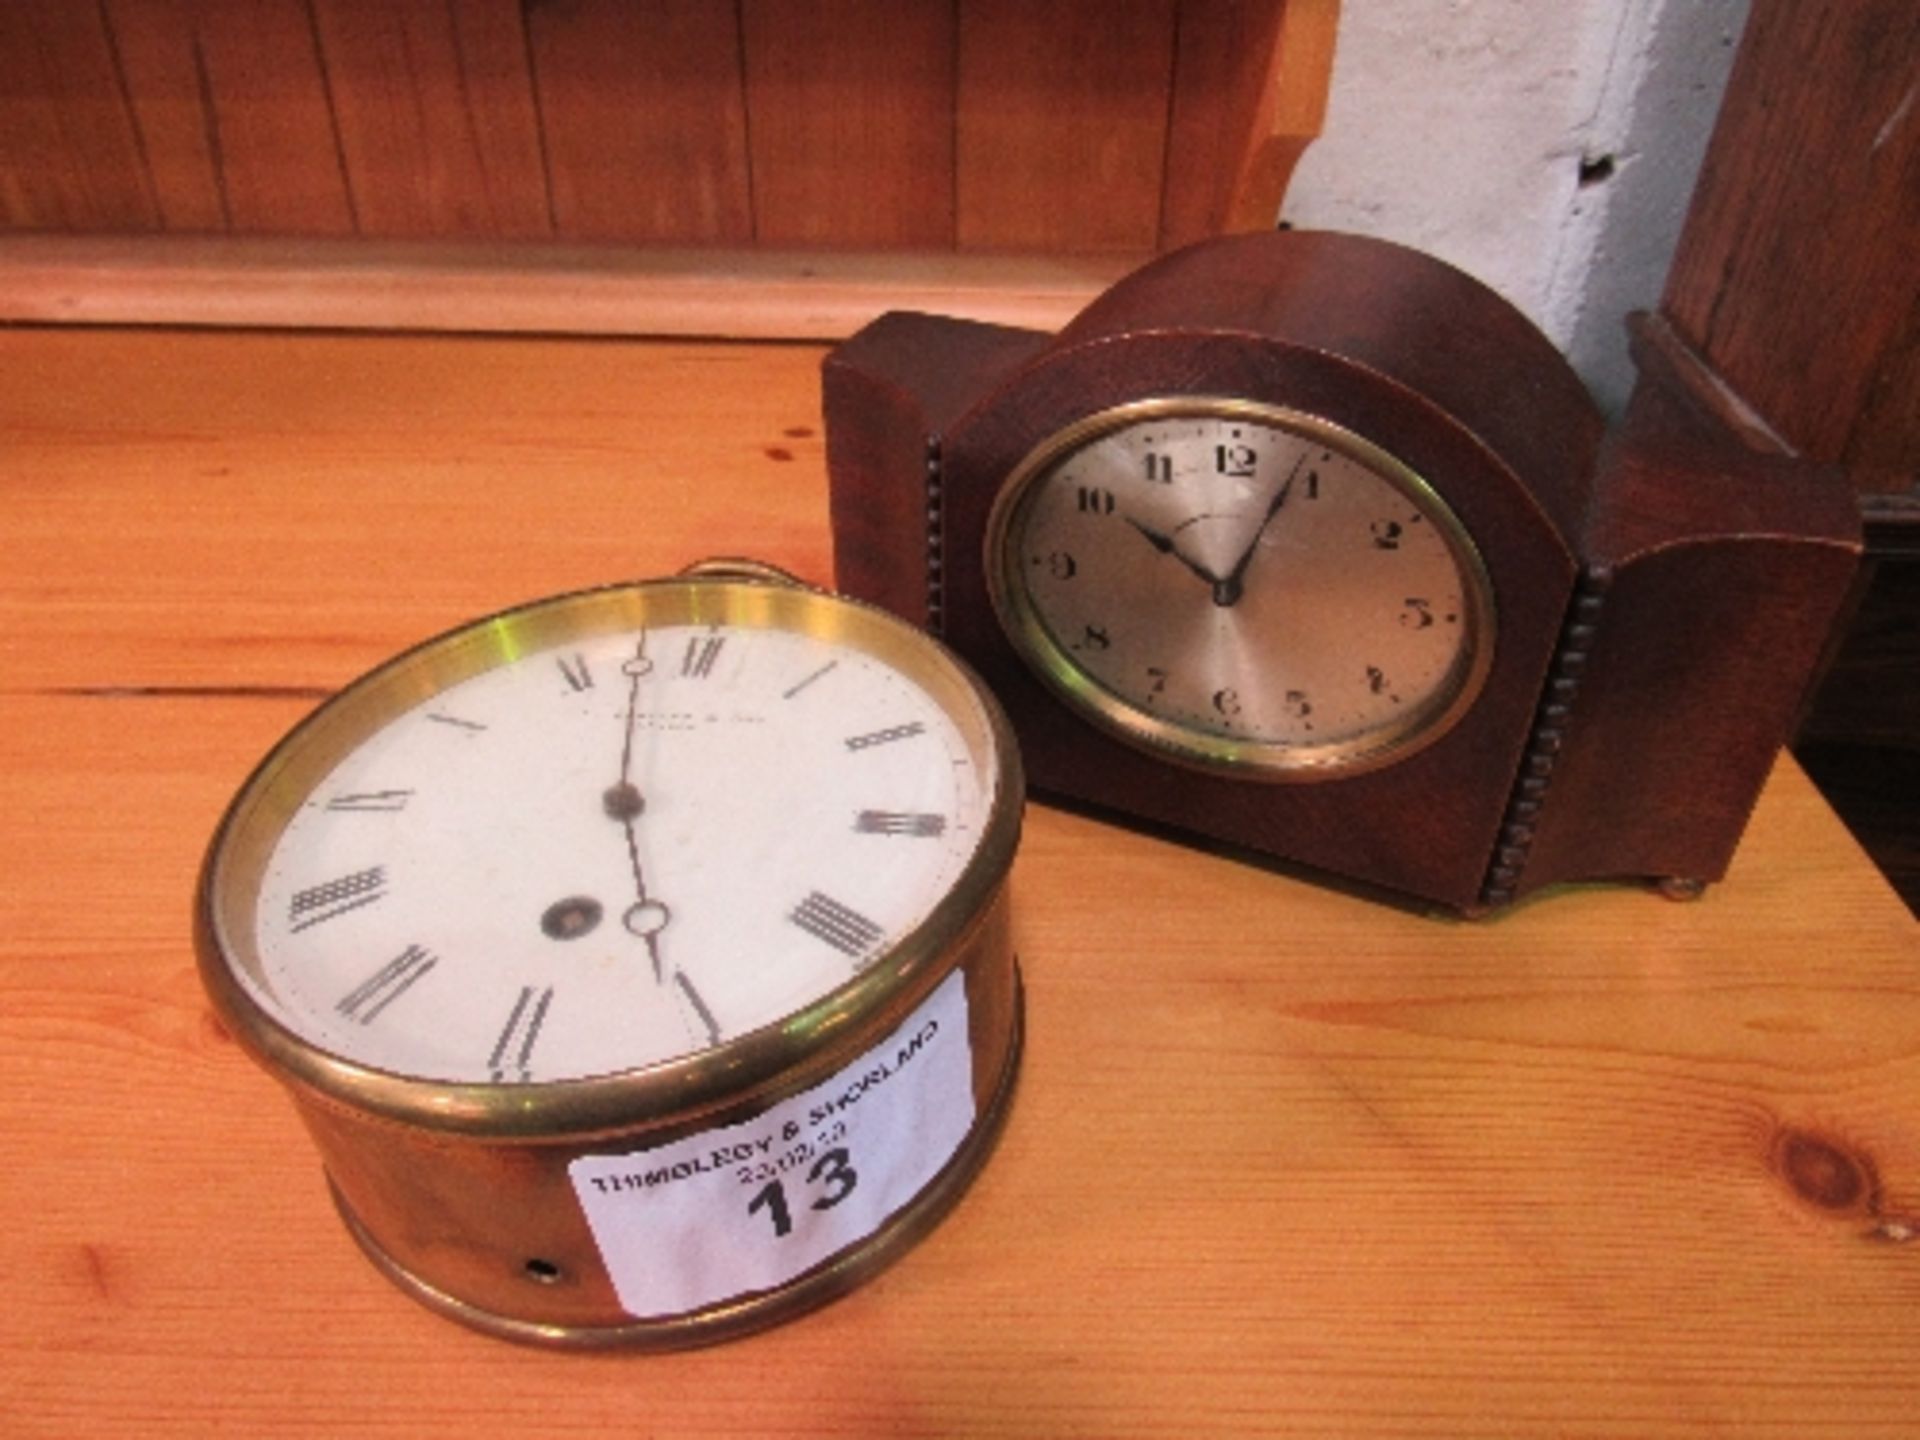 Mantle clock & a brass bound clock, a/f. Estimate £10-20.